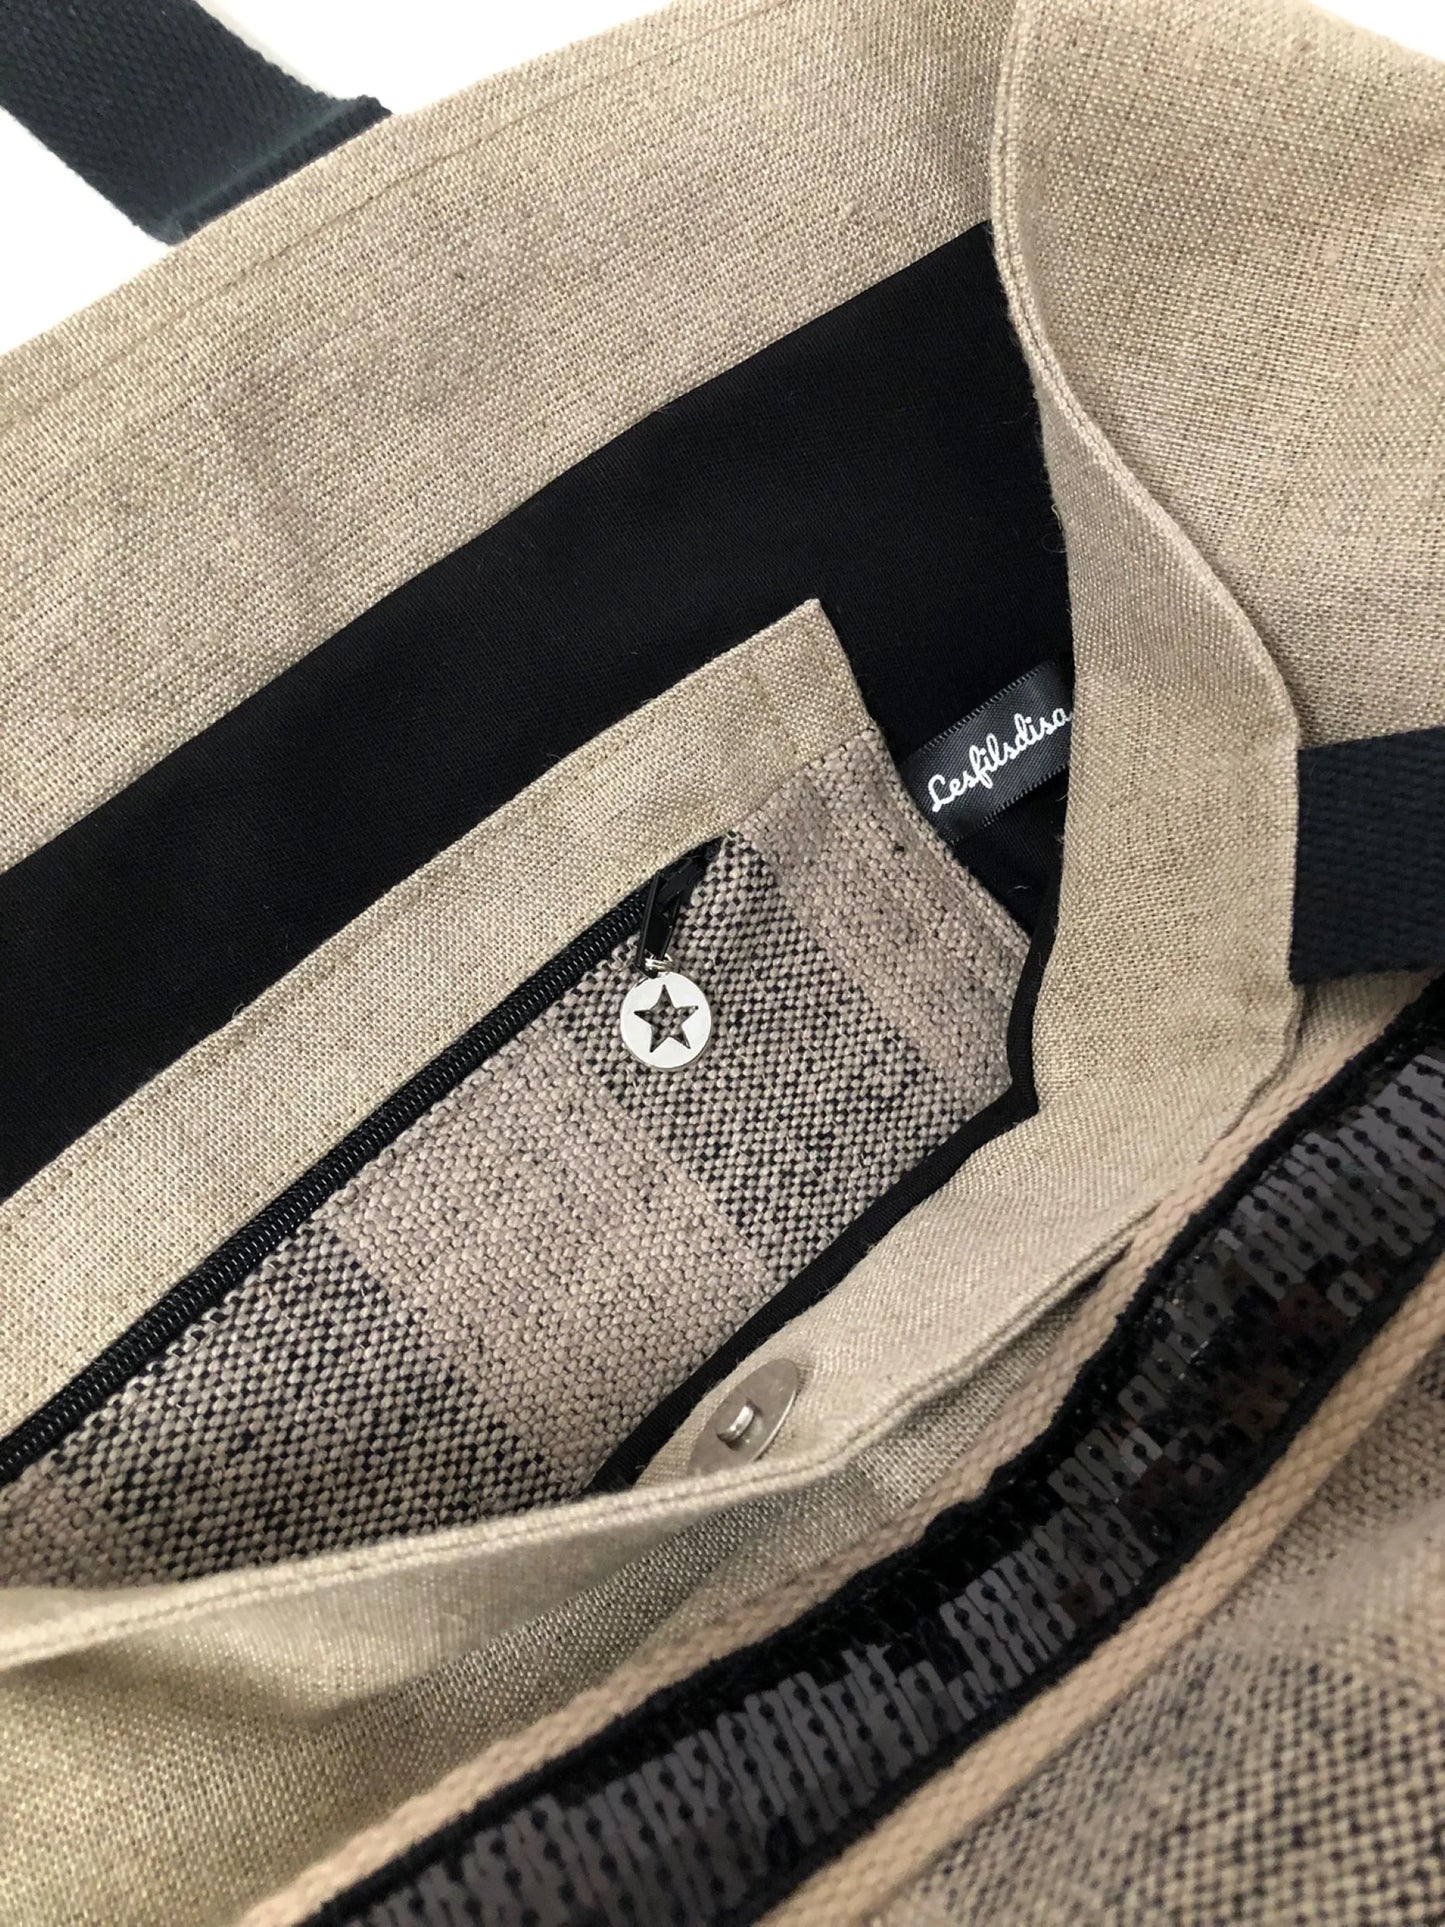 La poche intérieure zippée du sac cabas Isa en lin à larges rayures et paillettes noires.